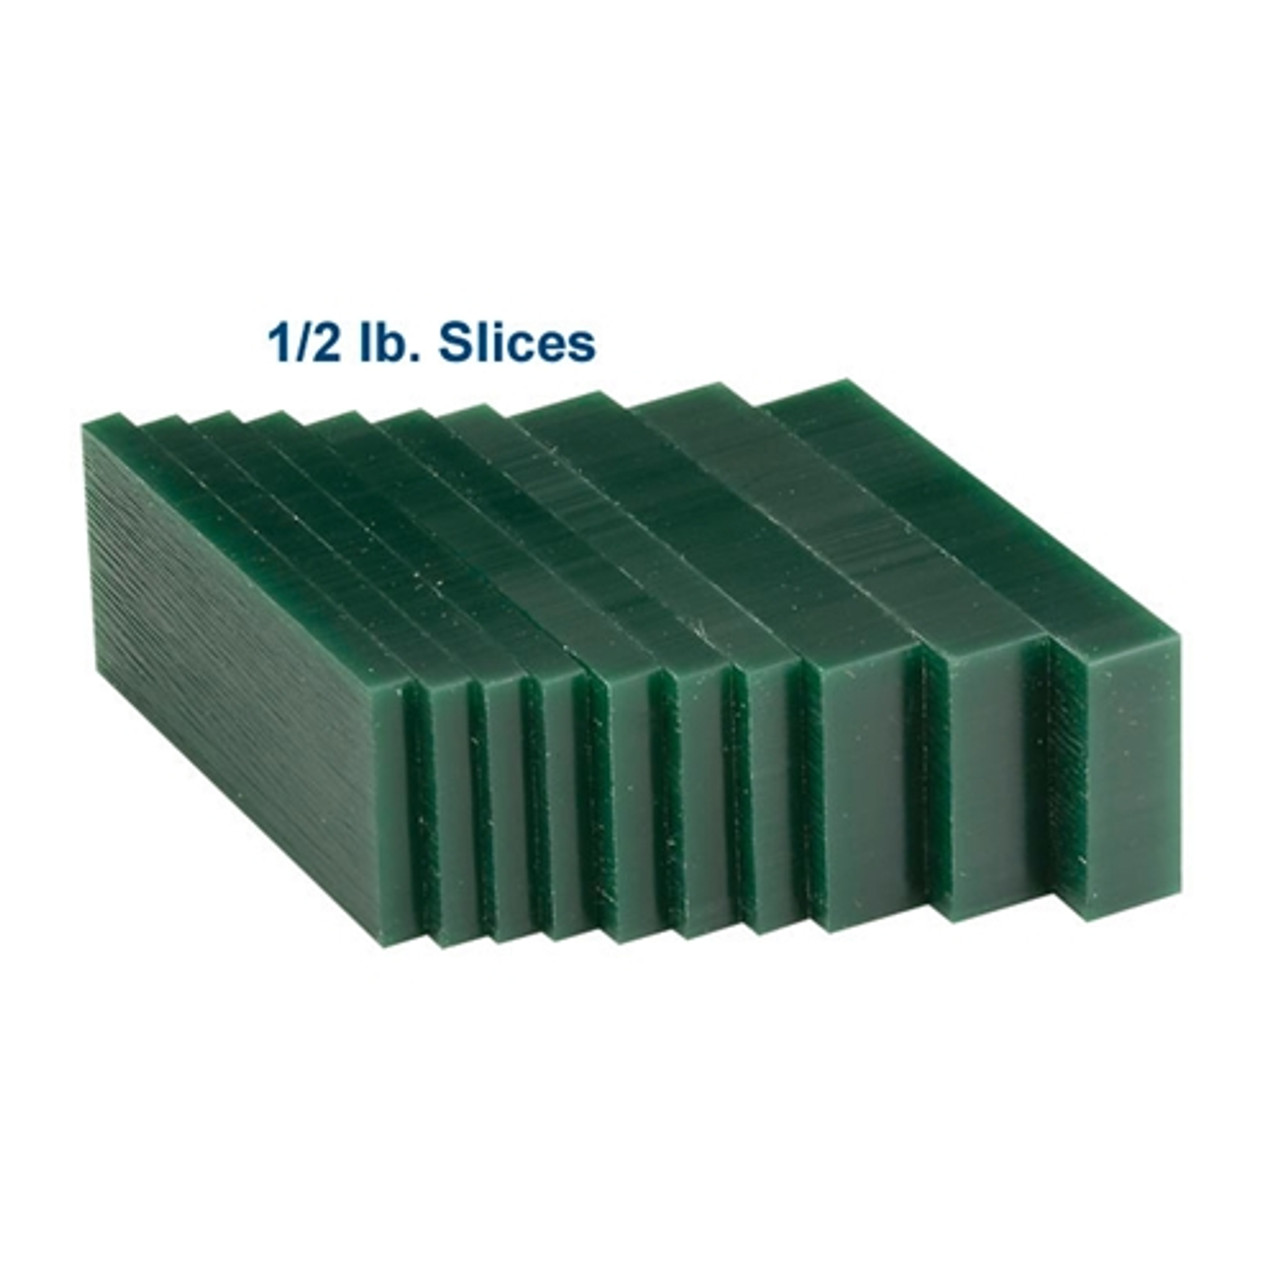 Matt™ Carving Wax Blocks & Slices - 1/2 lb. Slices Blue